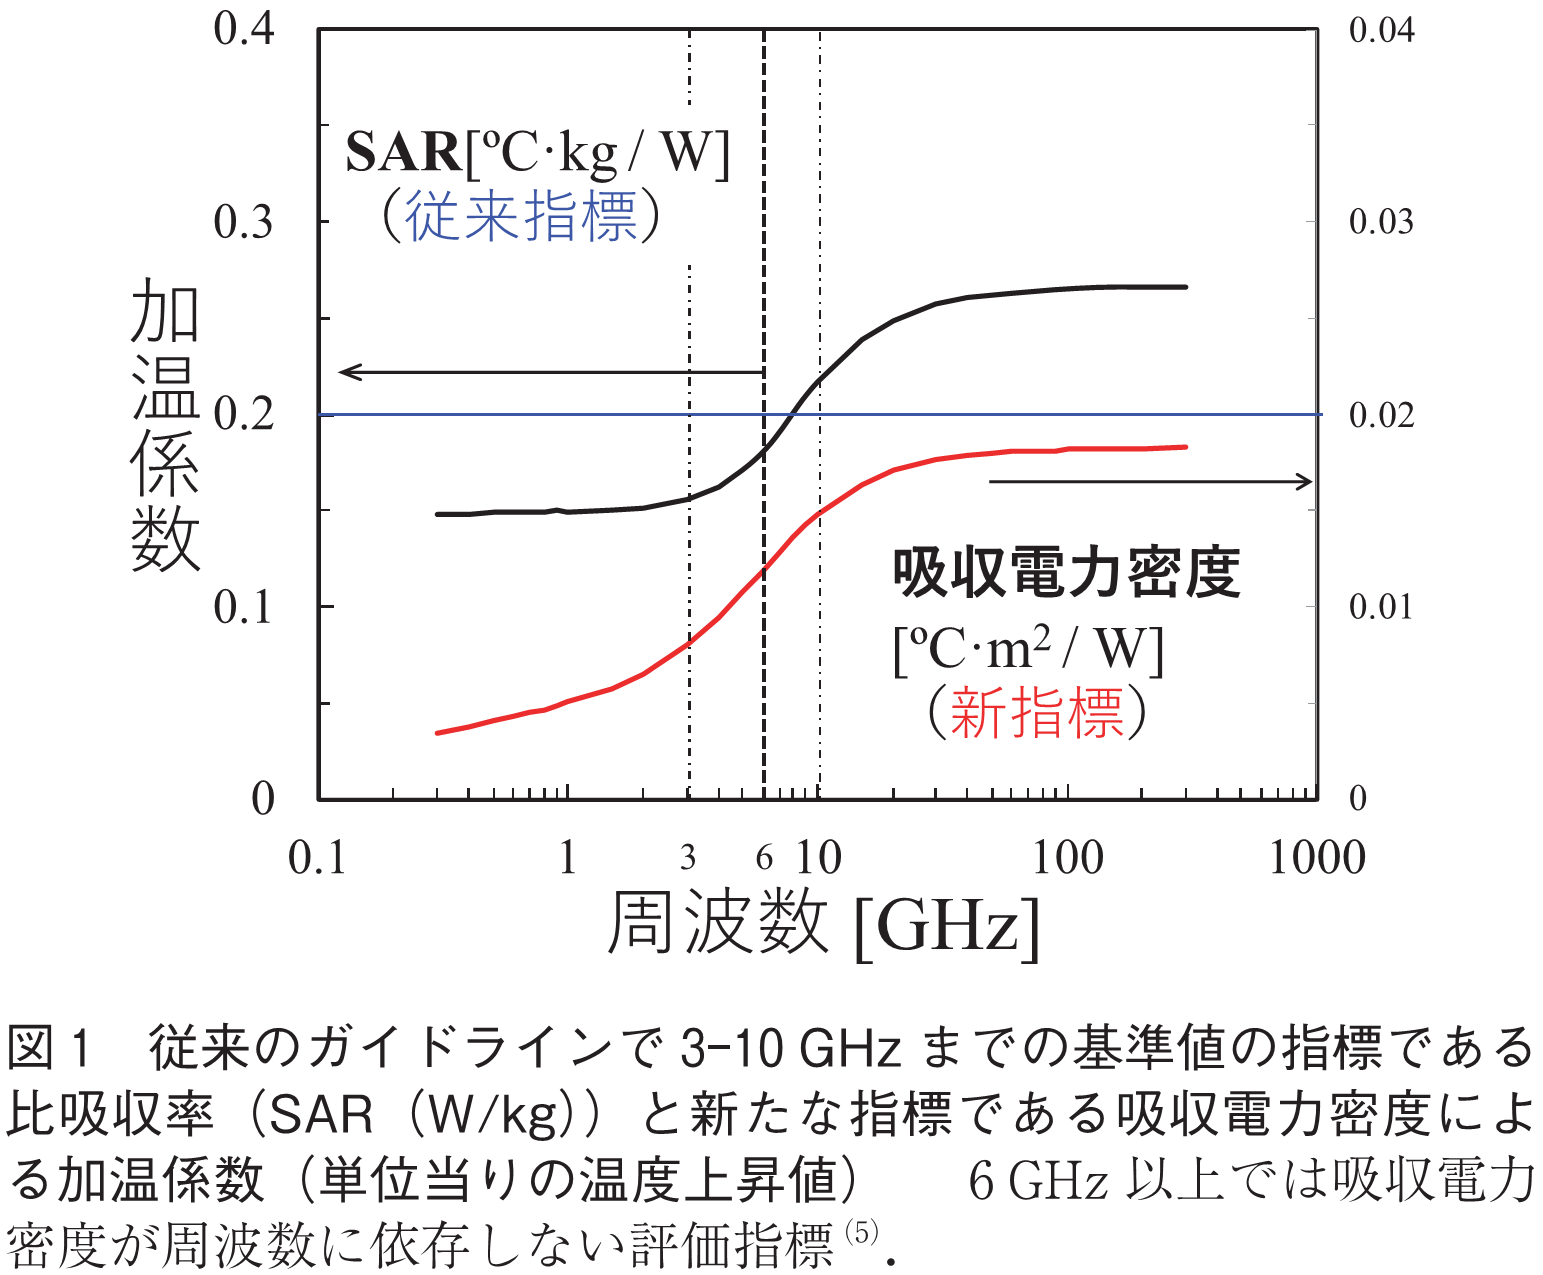 図1　従来のガイドラインで3-10GHzまでの基準値の指標である比吸収率（SAR（W/kg））と新たな指標である吸収電力密度による加温係数（単位当りの温度上昇値）